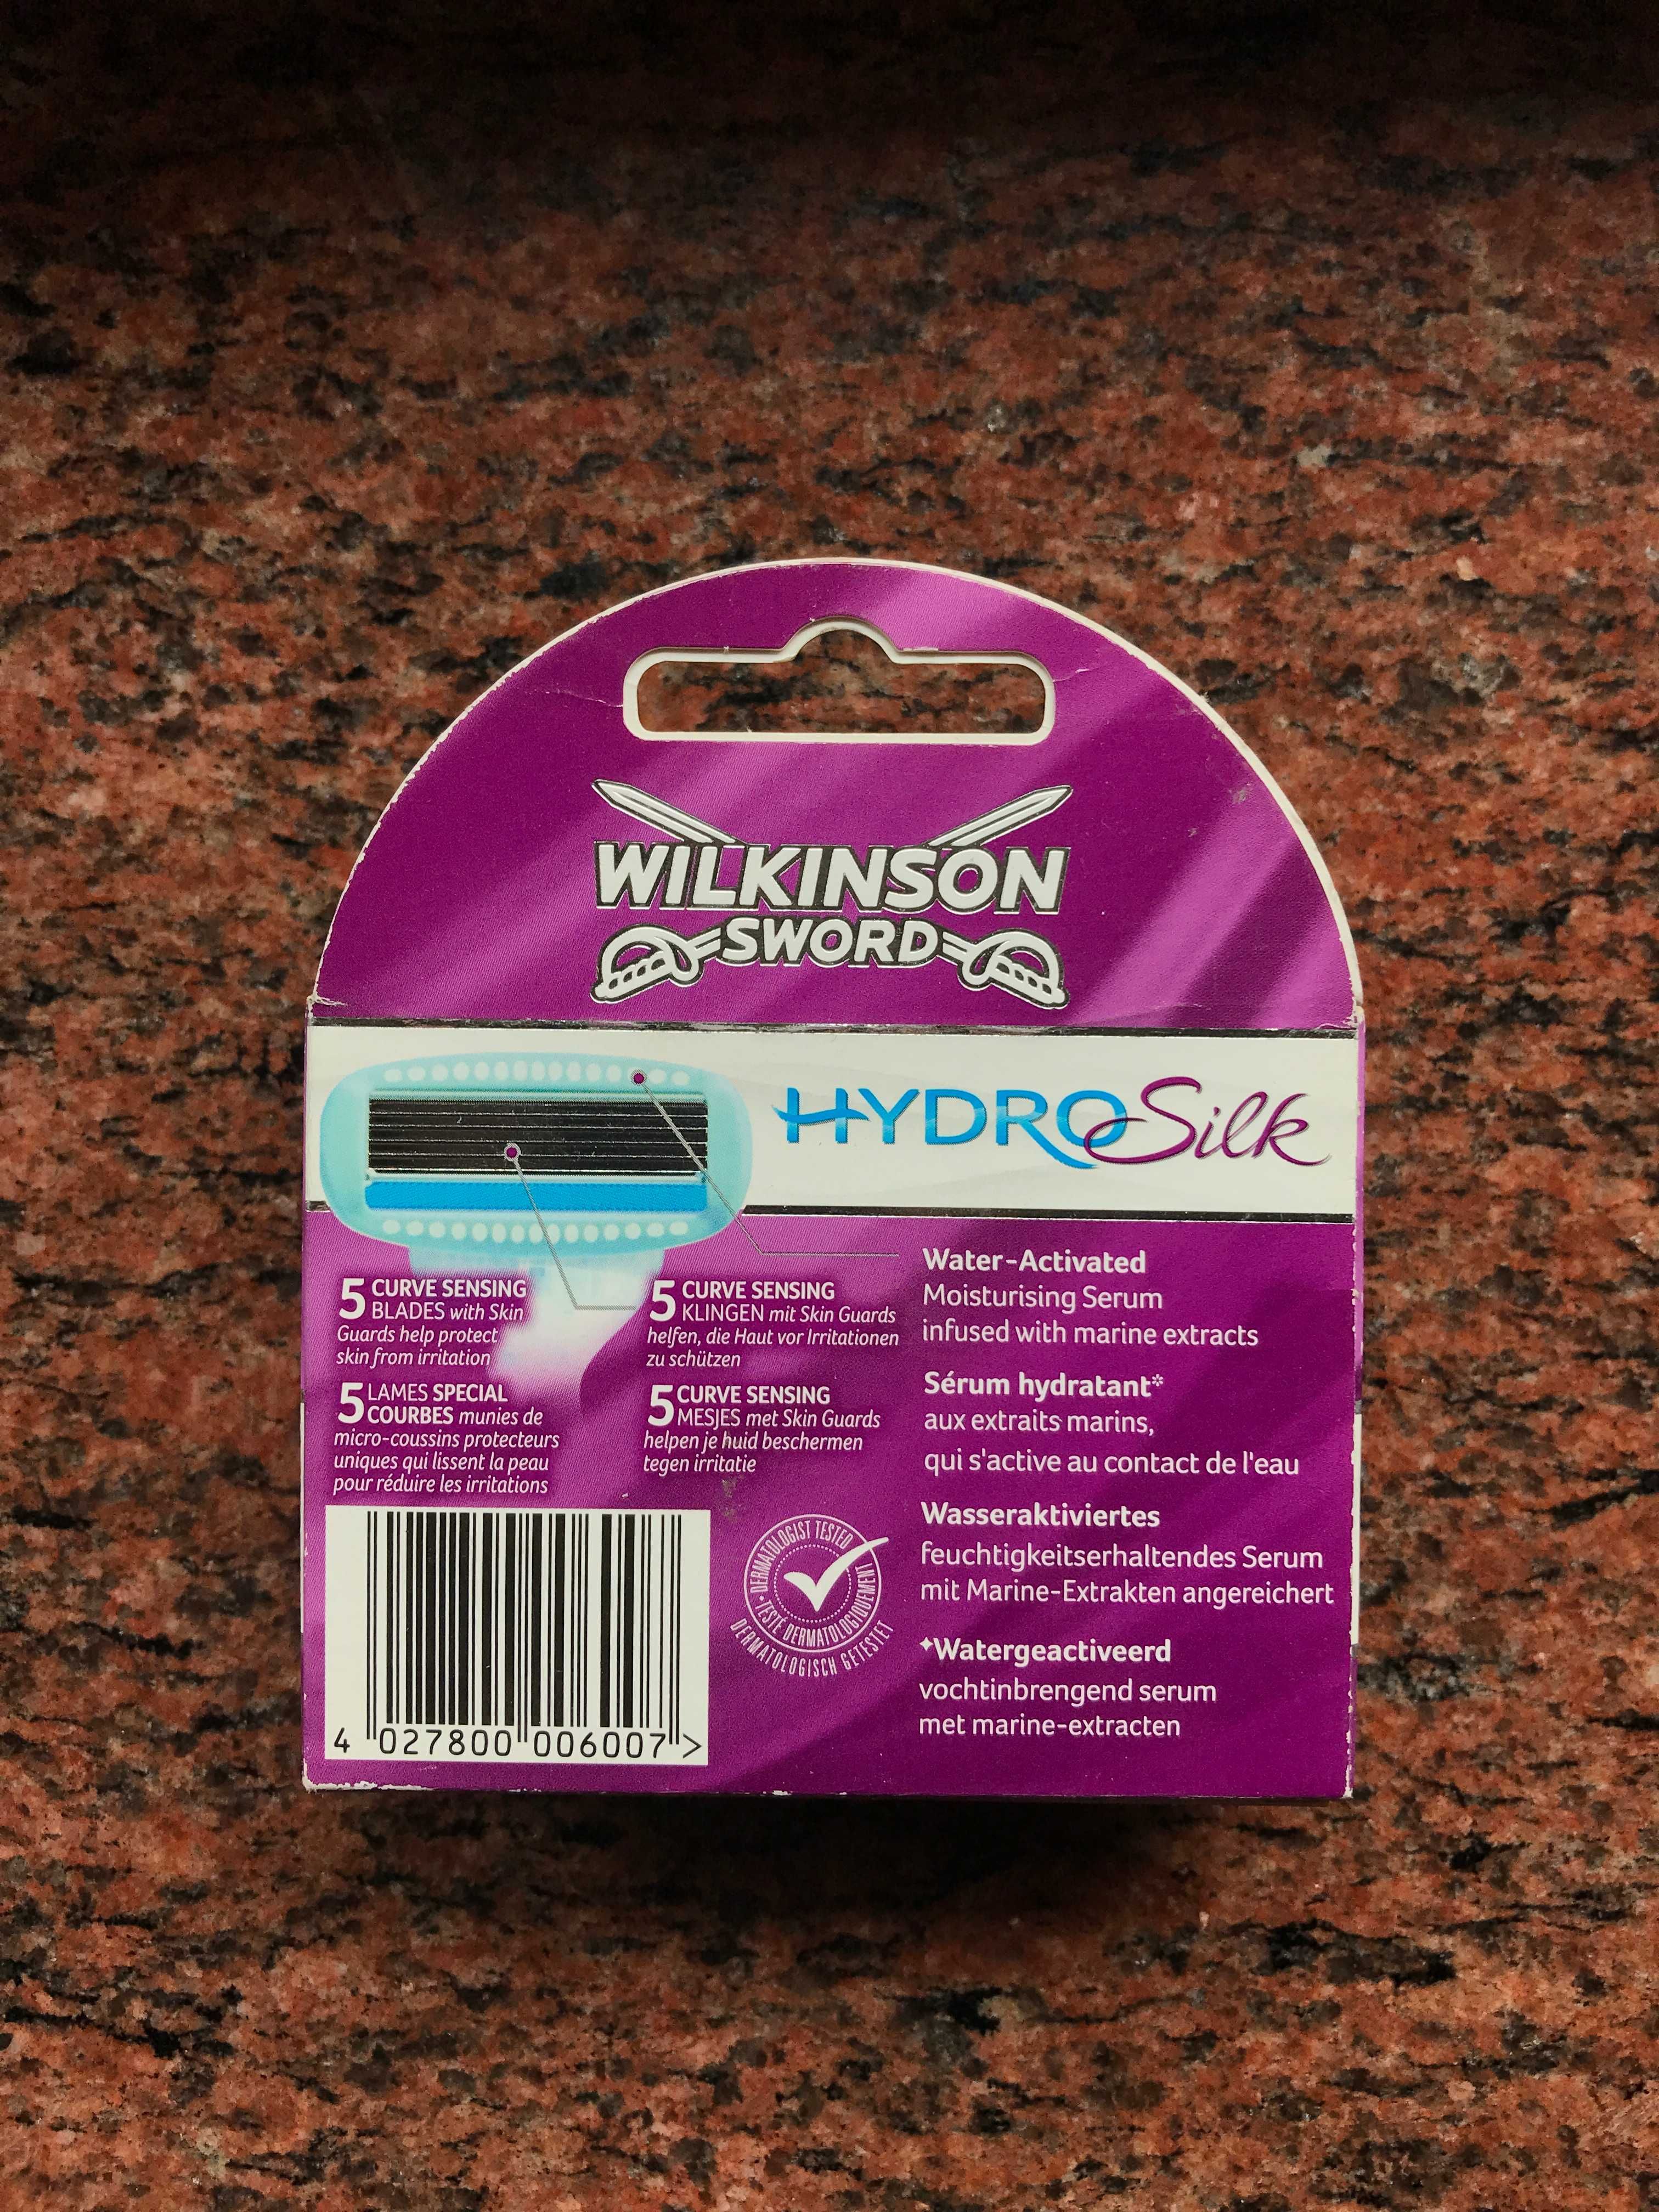 Ostrza Wilkinson Hydro za /Silk (2 opakowania) 45 zł. 1 opak 27 zł.